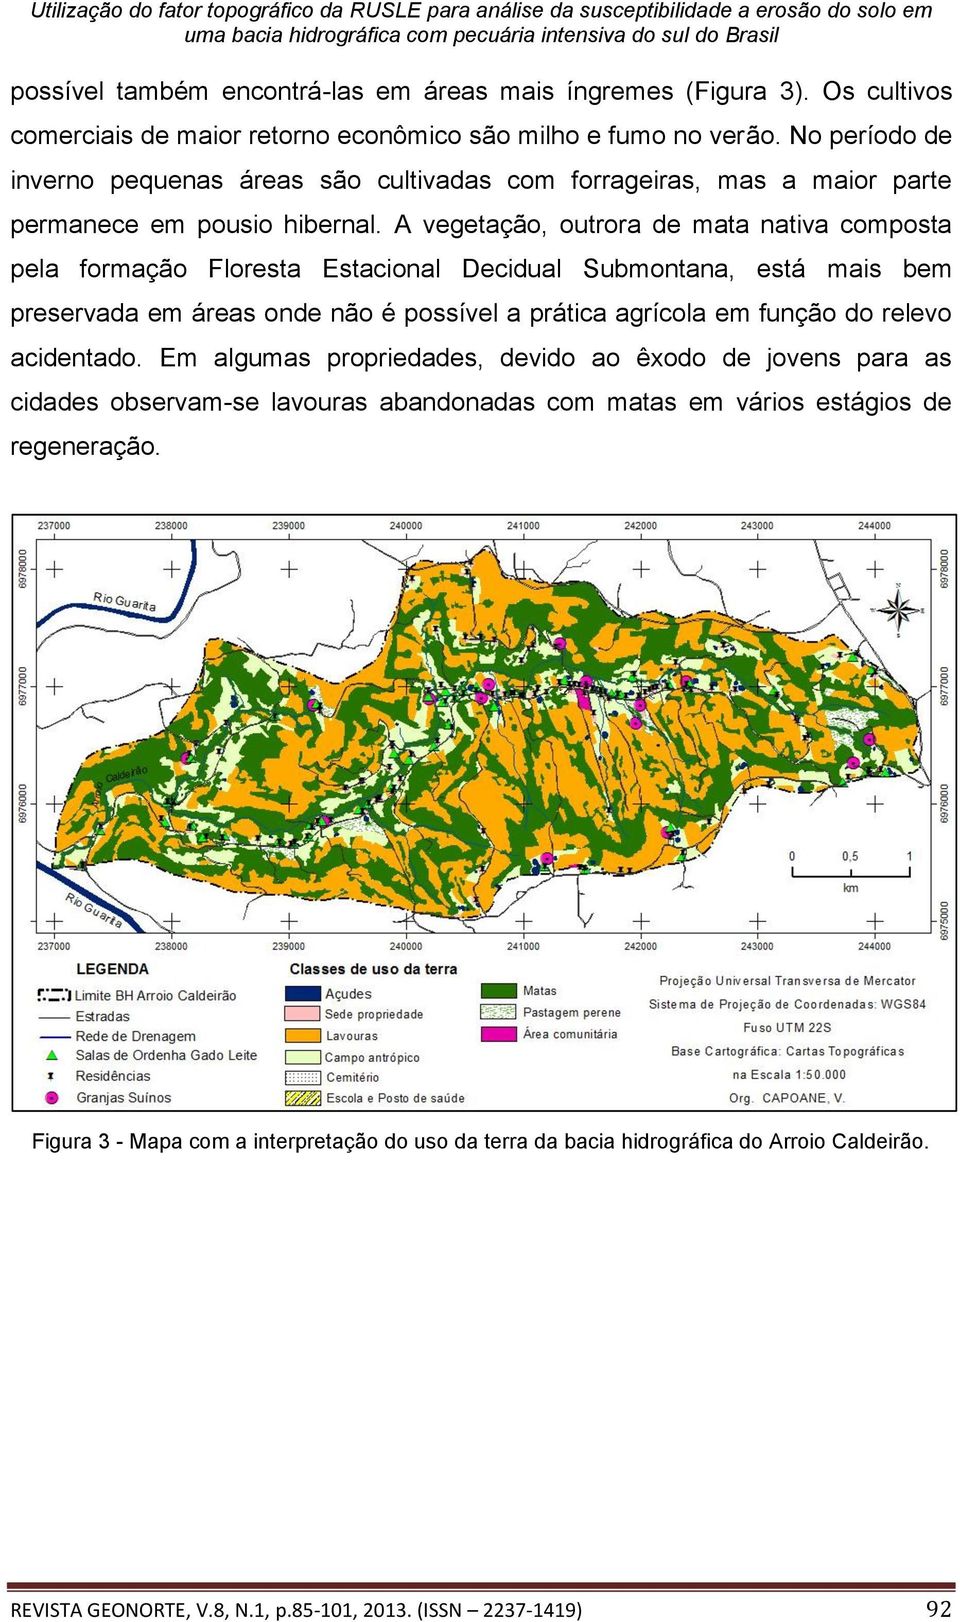 A vegetação, outrora de mata nativa composta pela formação Floresta Estacional Decidual Submontana, está mais bem preservada em áreas onde não é possível a prática agrícola em função do